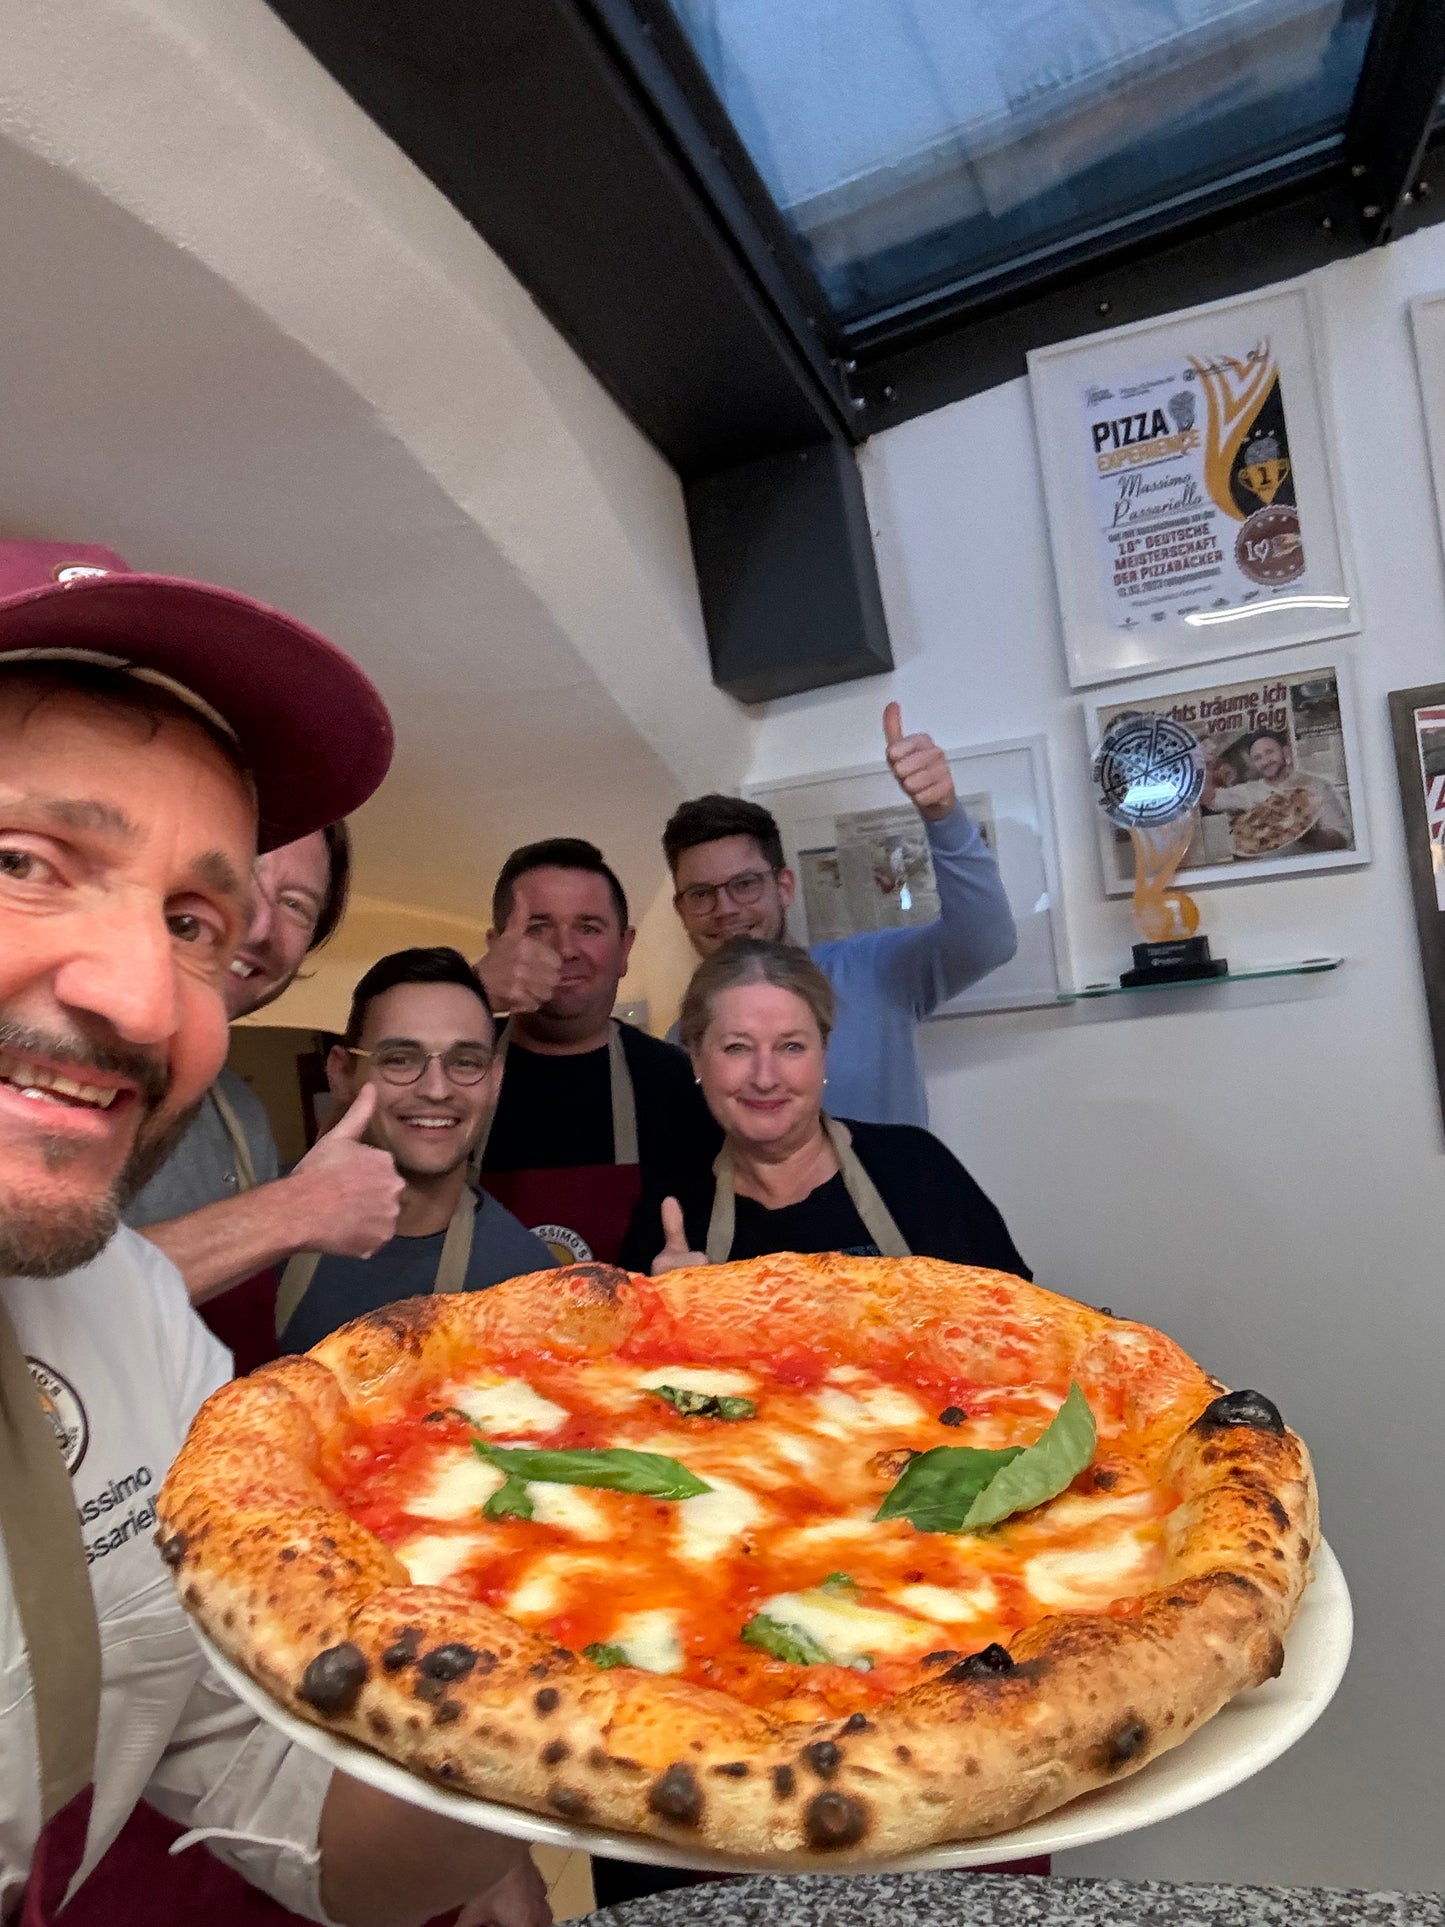 Massimos Hobby-Pizzabäcker-Workshop Ticket 22,April